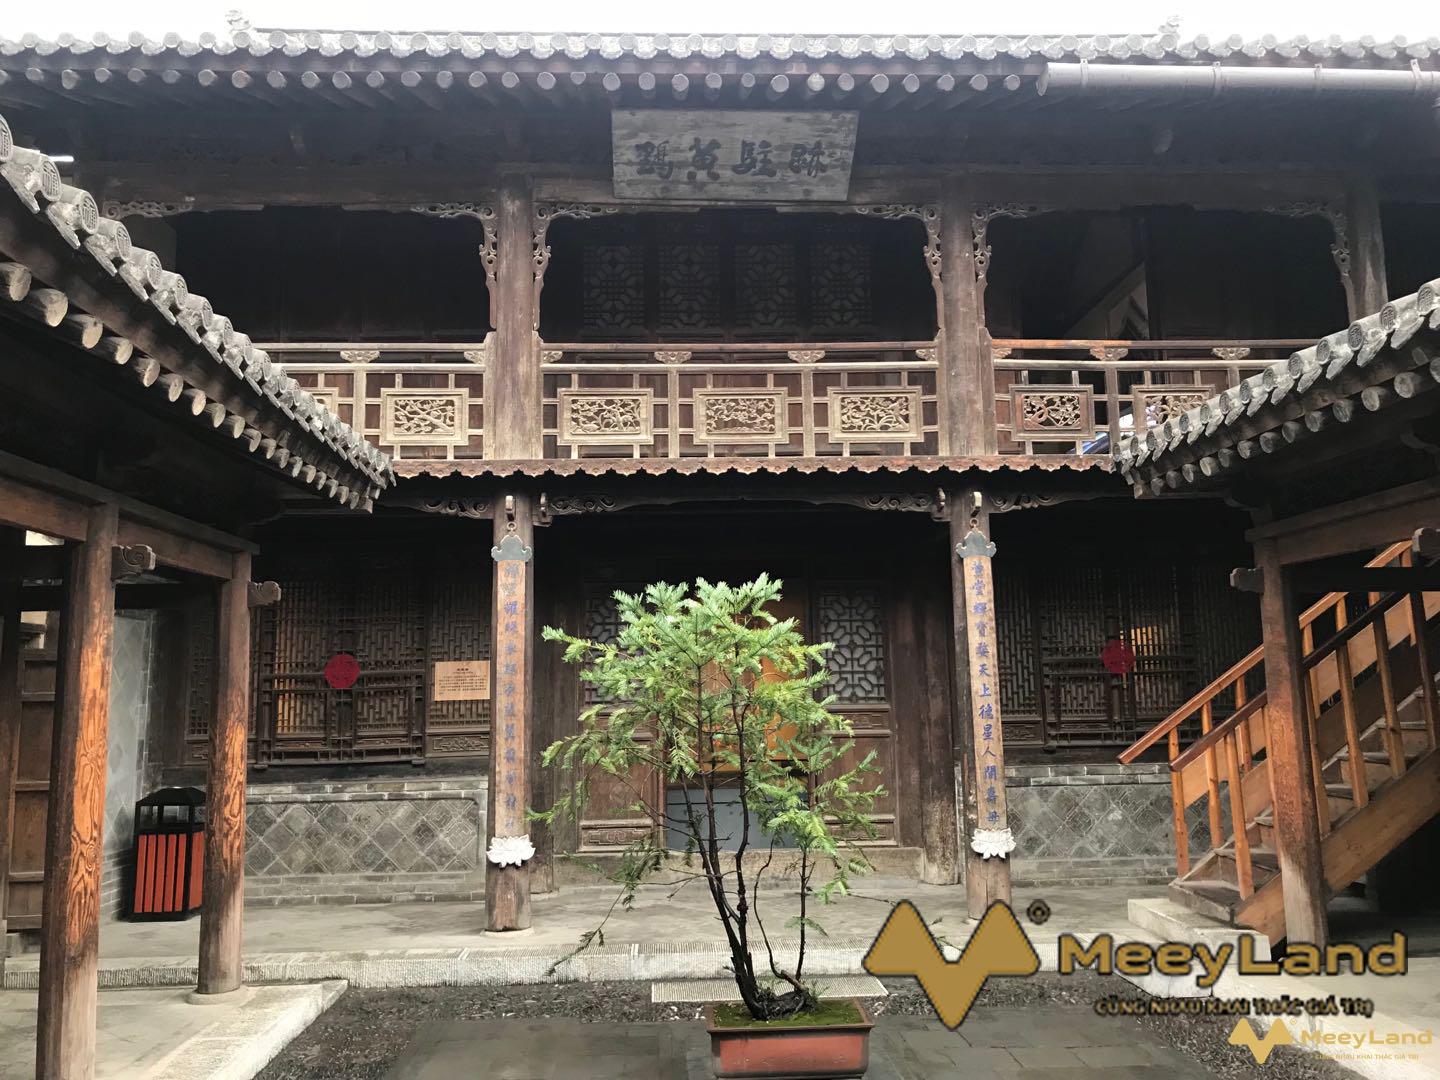 
Mẫu kiến trúc nhà cổ Trung Quốc mà thoạt nhìn bạn có thể nhận ra
